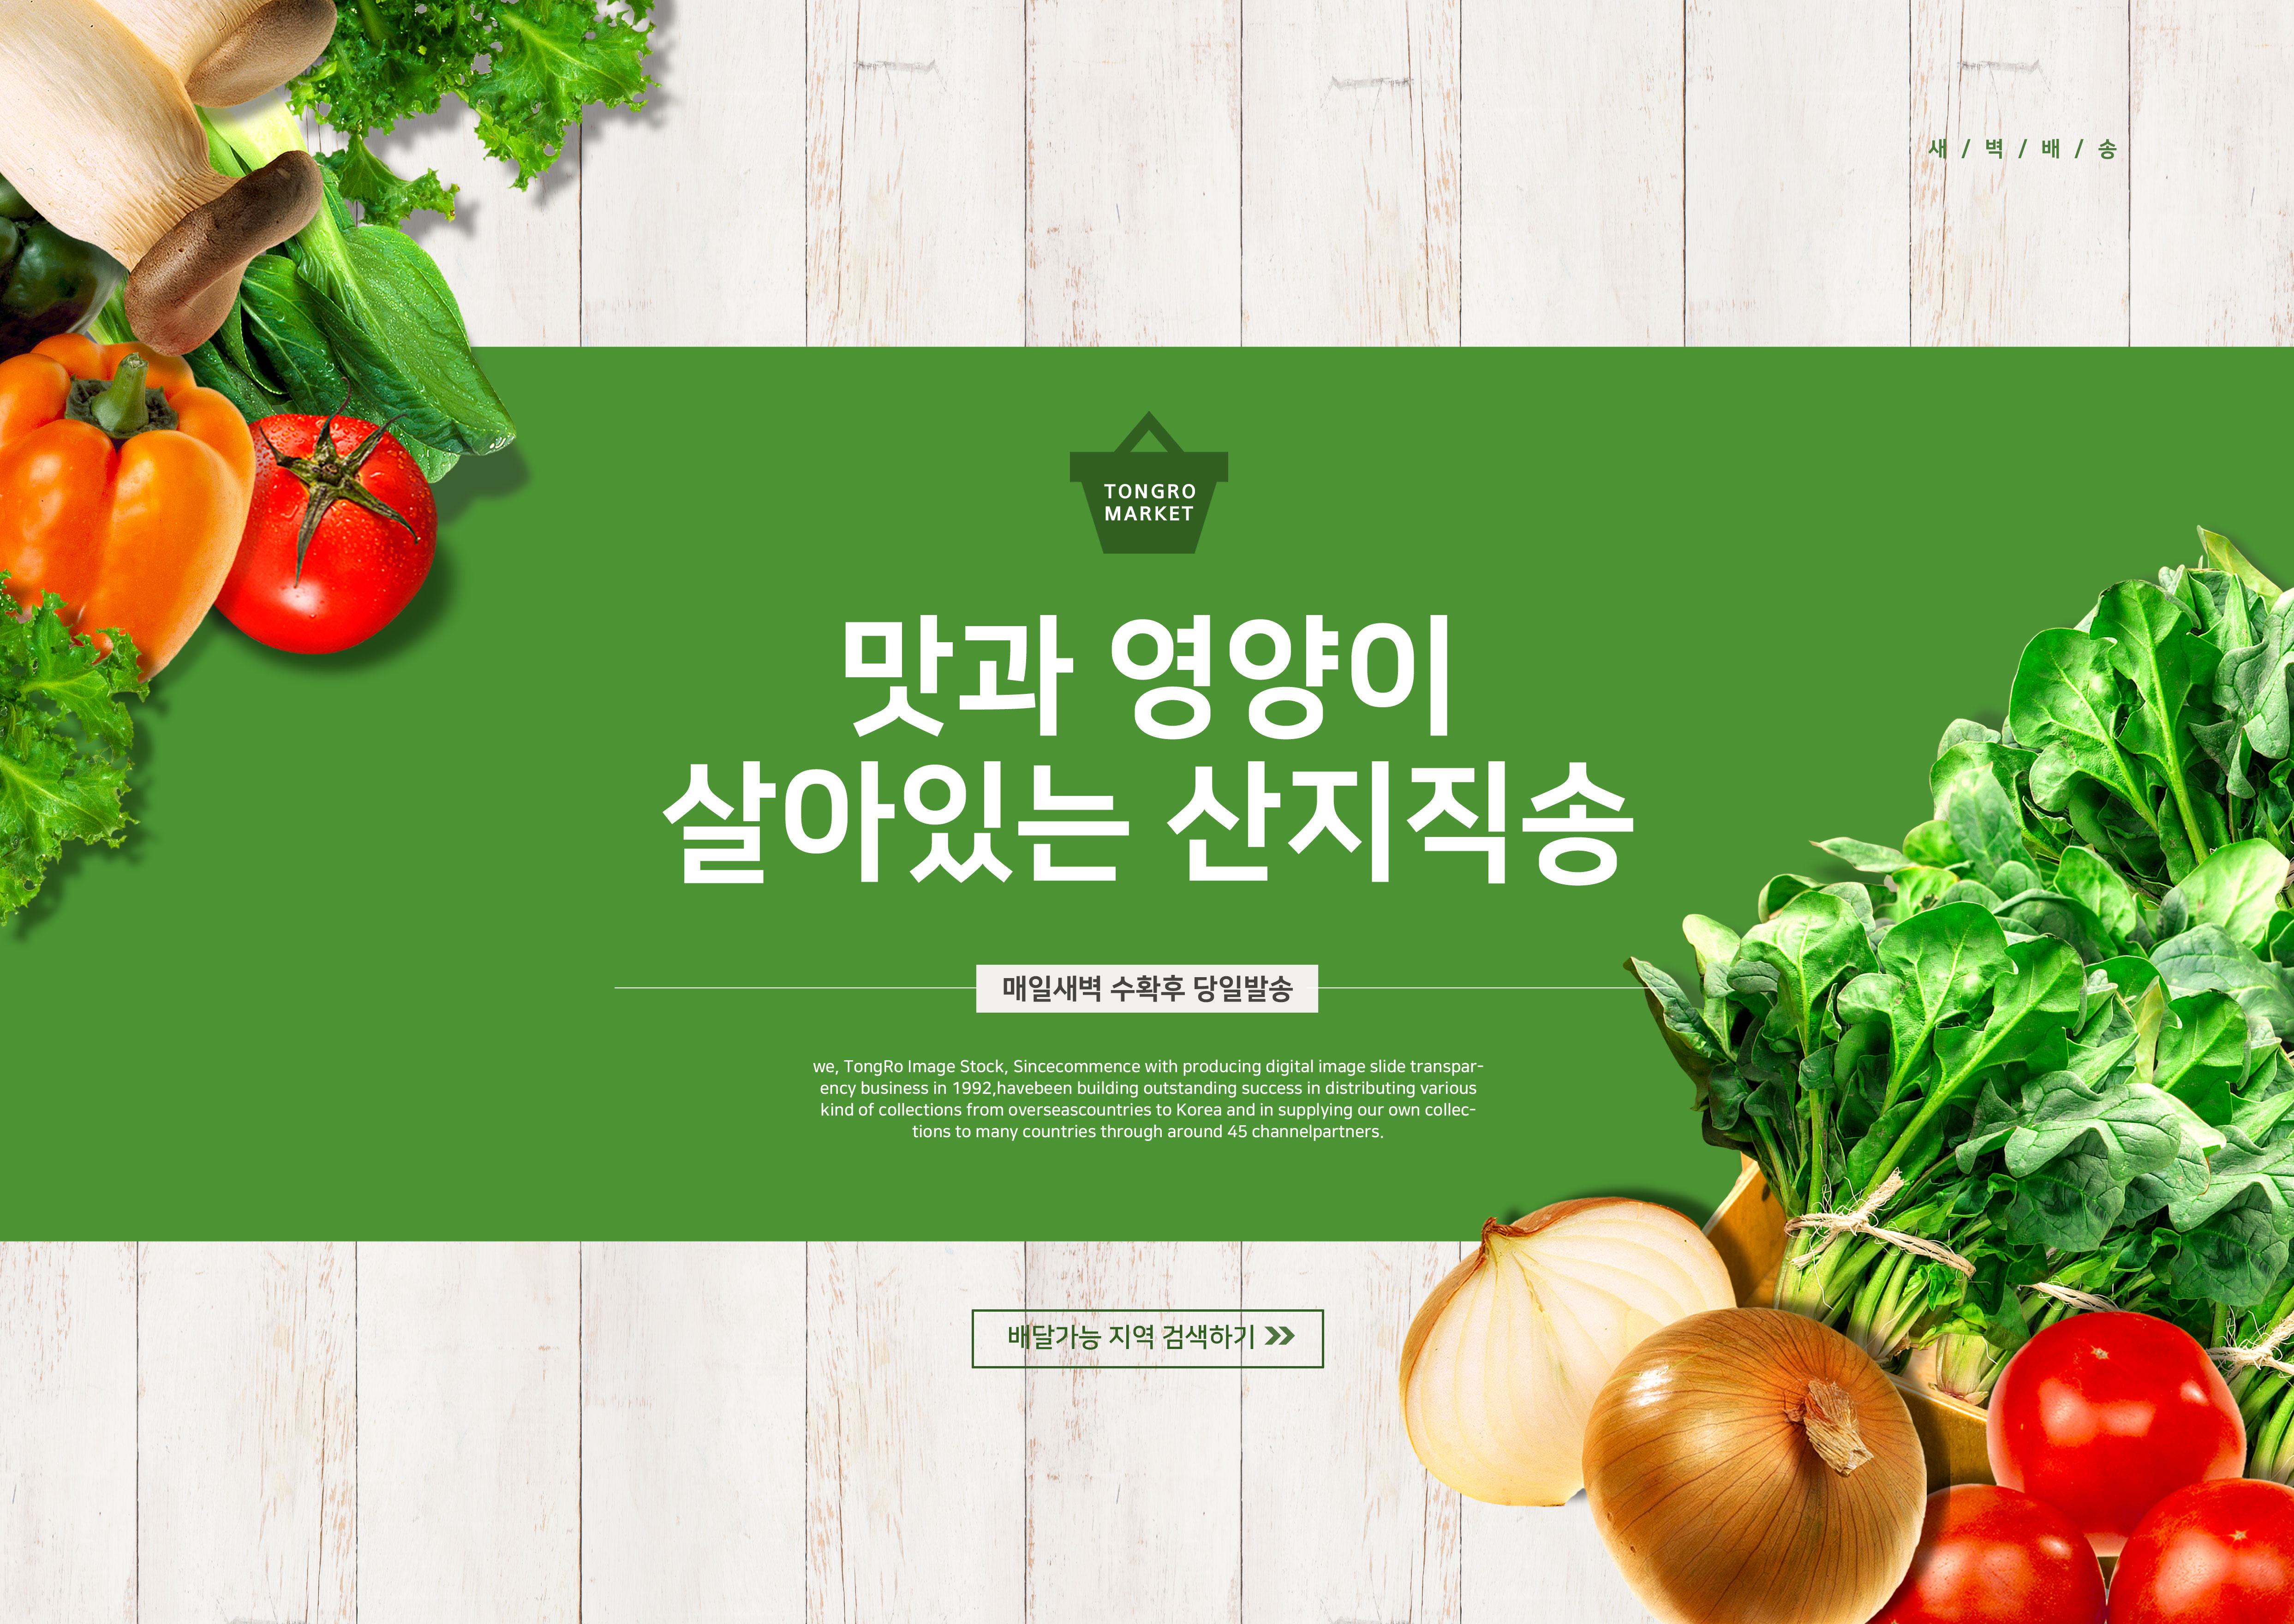 绿色有机食品海报设计素材套装[PSD]插图